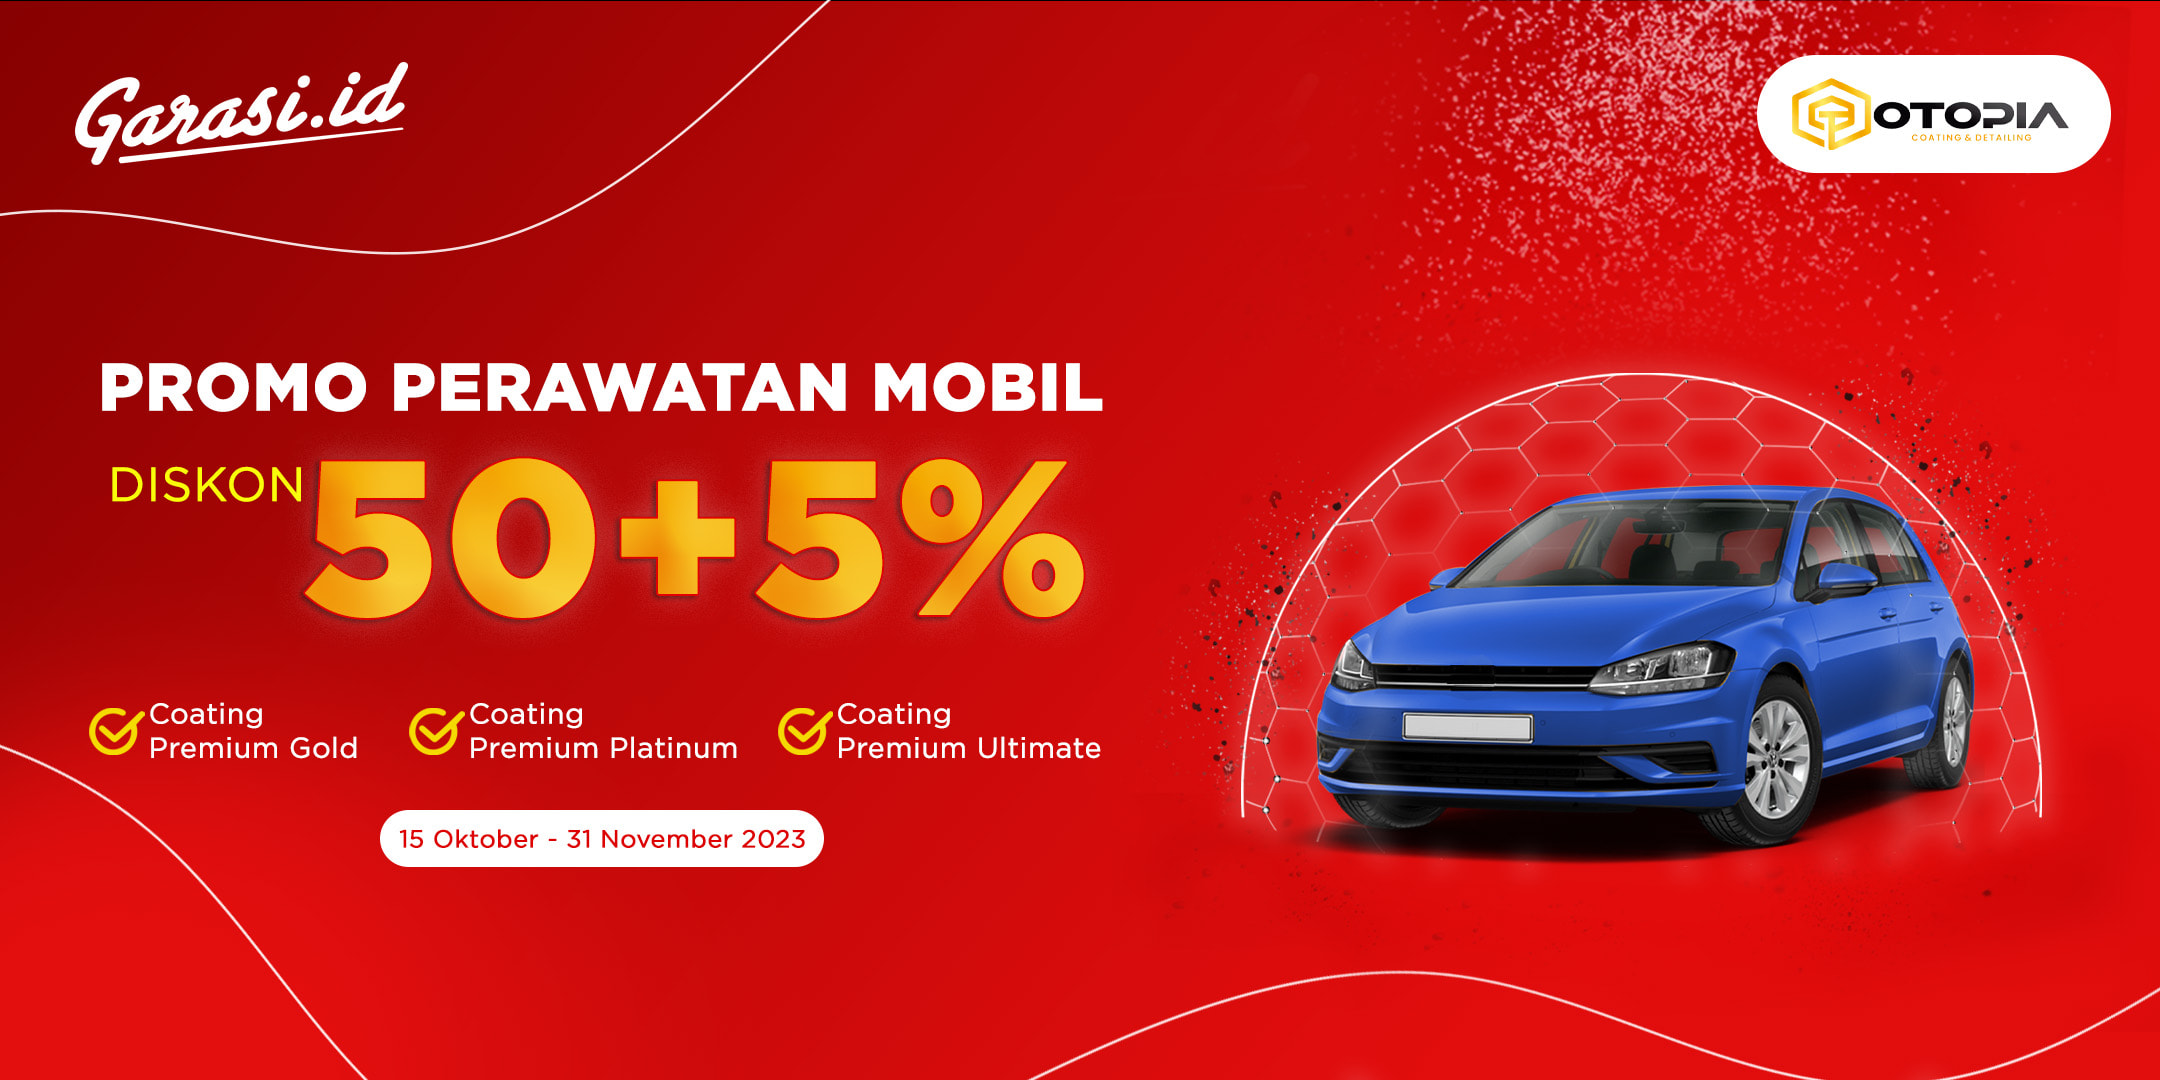 Diskon Hingga 50% + 5% untuk perawatan eksterior  mobil kesayangan Sahabat hanya di Otopia Indonesia.